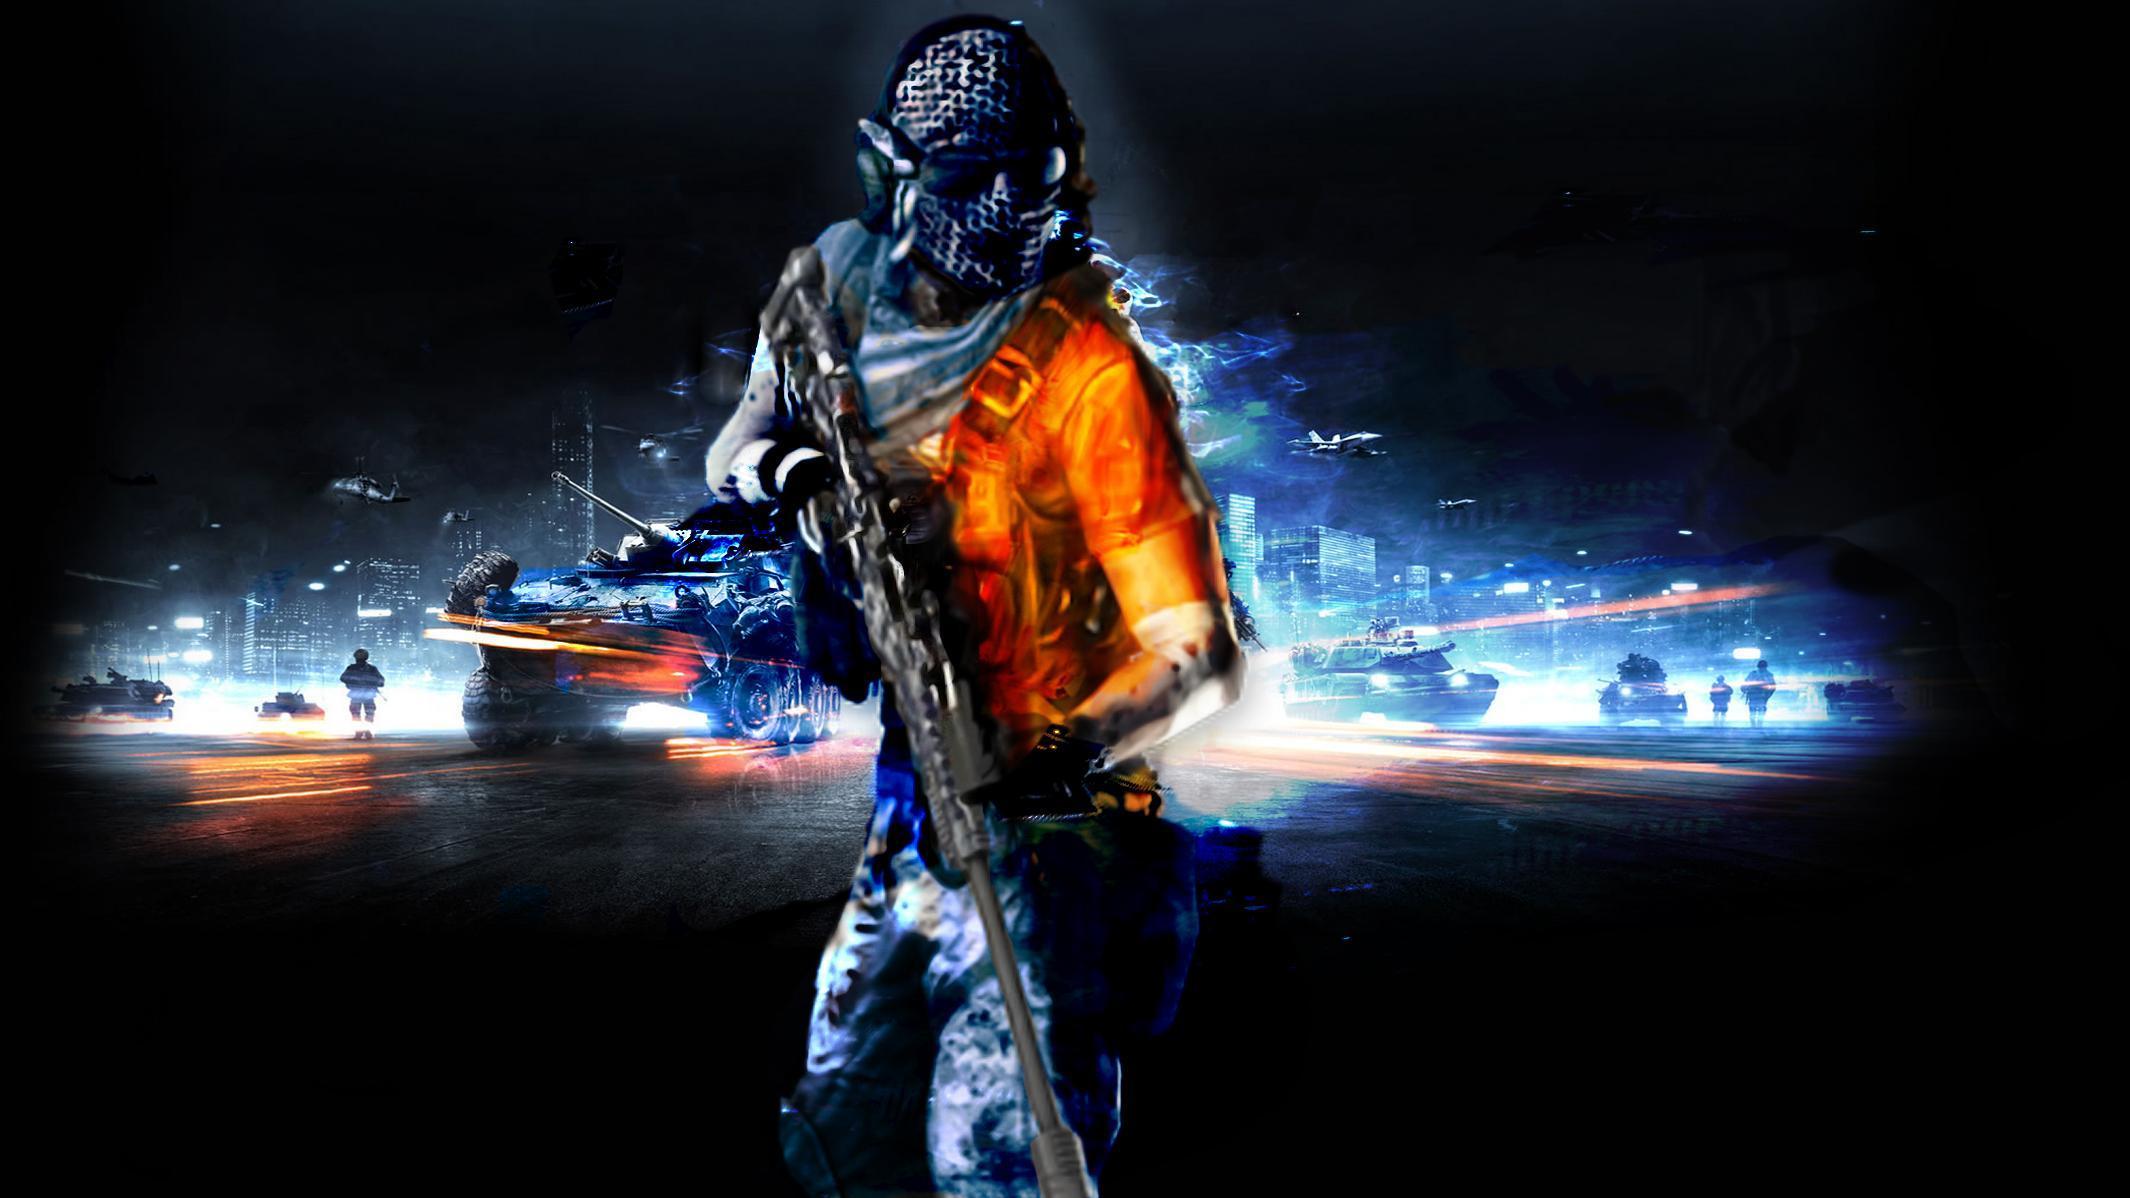 Battlefield 3 The Sniper HD desktop wallpaper, Widescreen, High